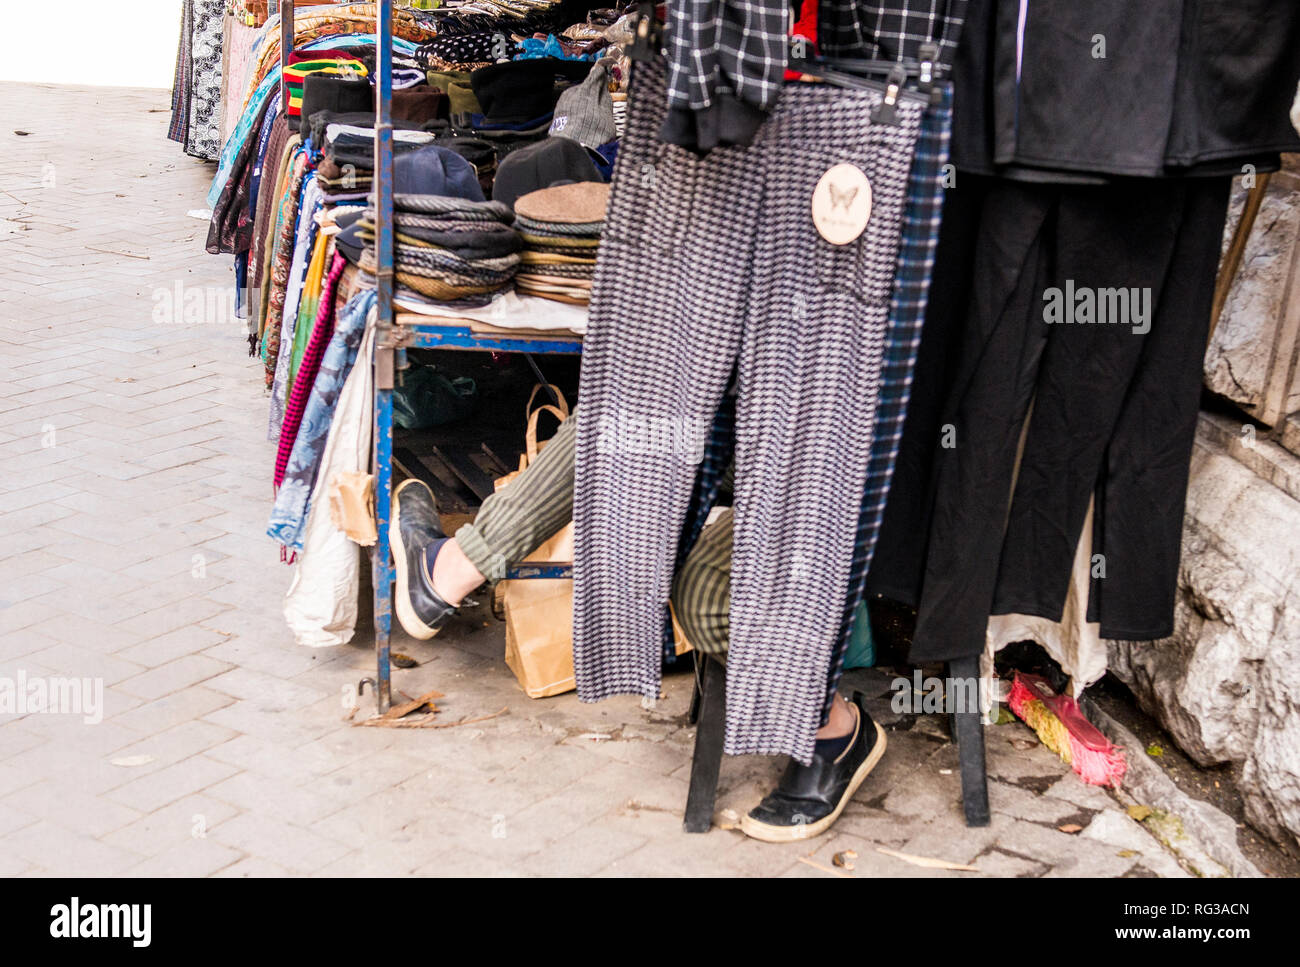 Mann neben Markt sitzen, Füße stoßen von hinten hängenden Hosen, Palermo, Sizilien, Italien, Europa Stockfoto